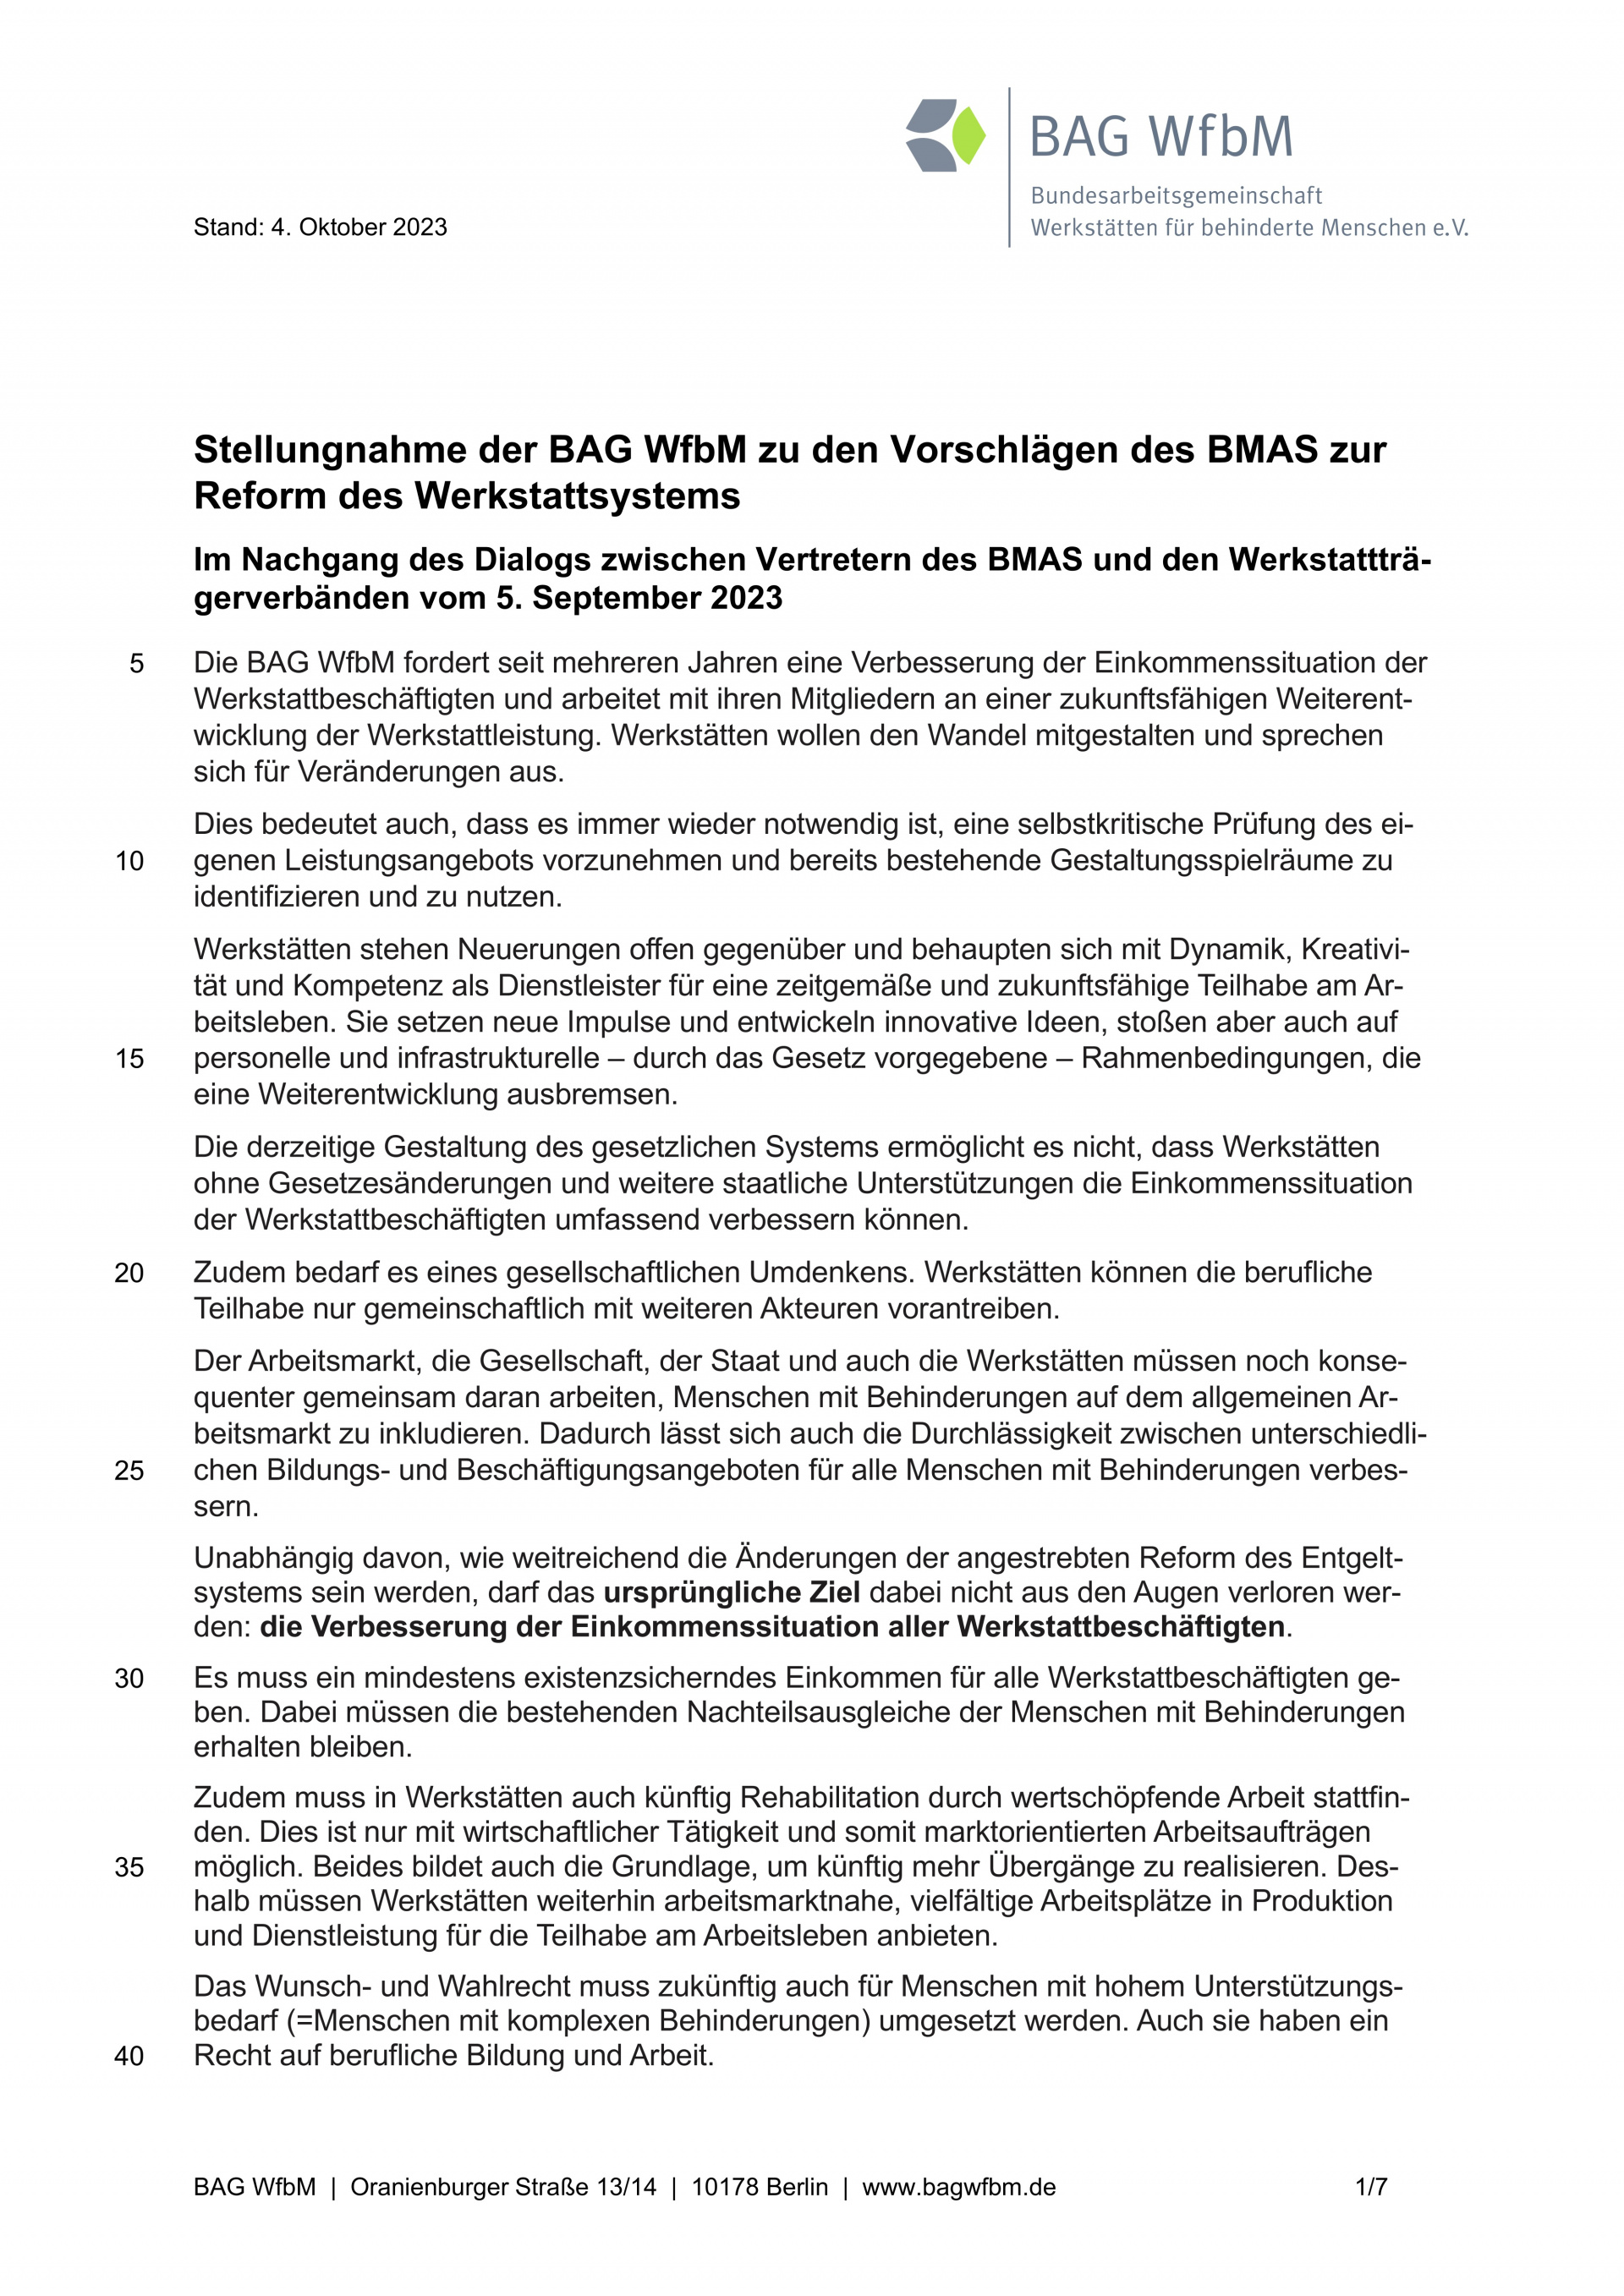 Stellungnahme BAG WfbM zu Entgeltreform und Entwicklung der WfbM (Auszug, komplettes Dokument im Download Bereich) 
© BAG WfbM